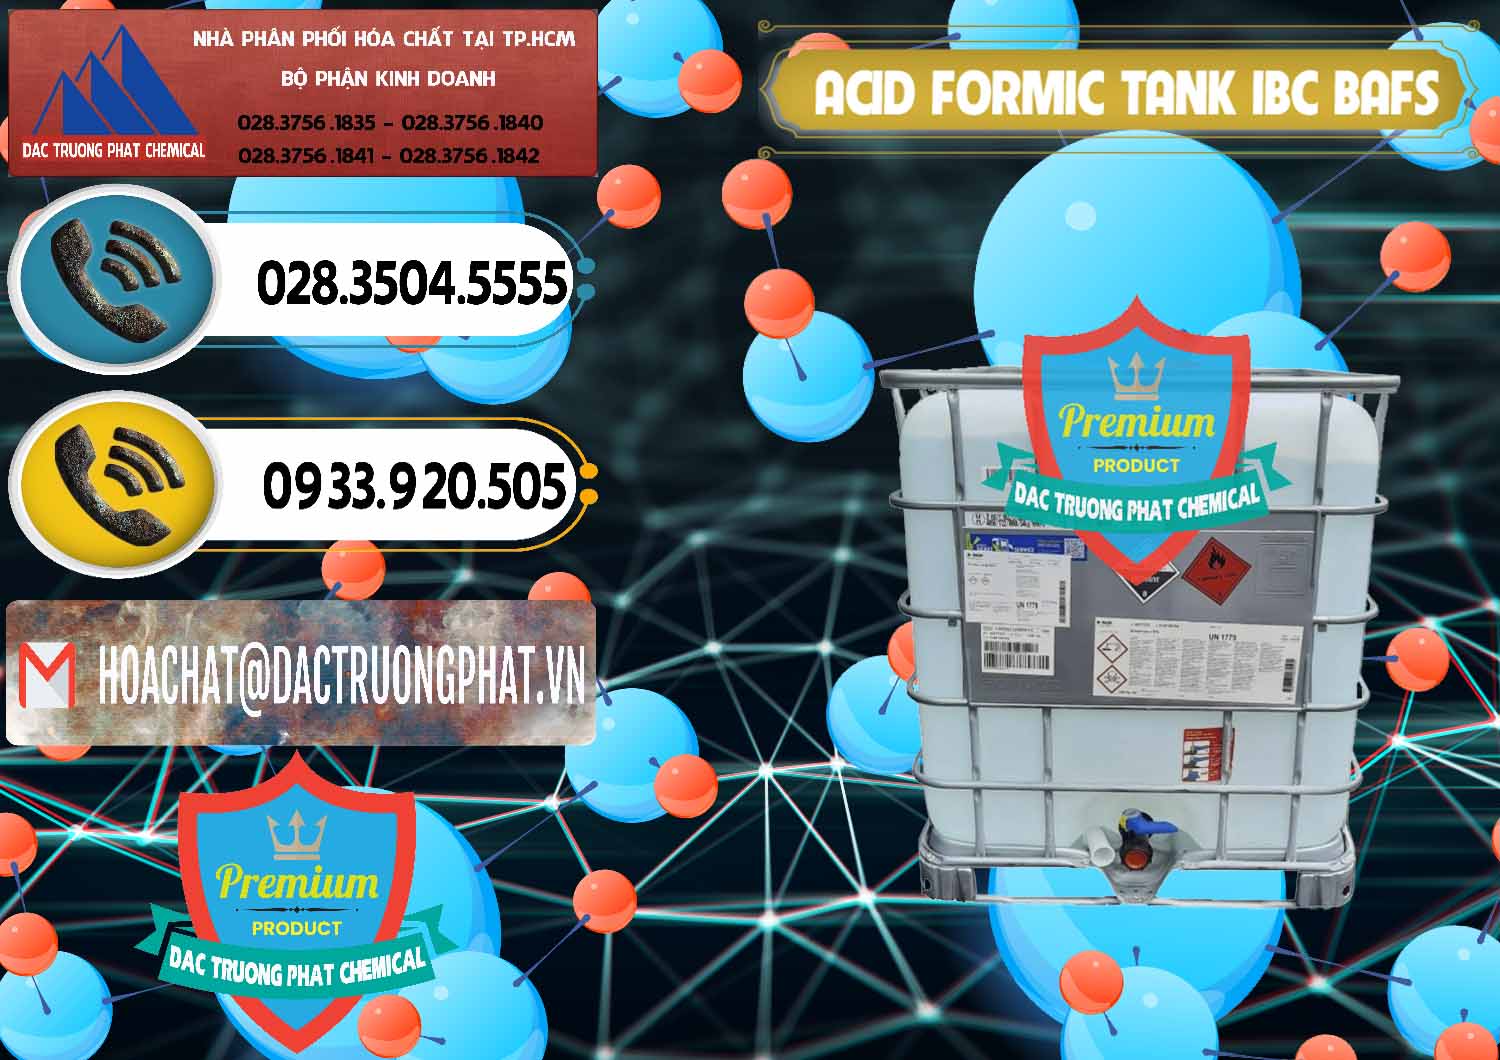 Công ty nhập khẩu & bán Acid Formic - Axit Formic Tank - Bồn IBC BASF Đức - 0366 - Công ty cung cấp - phân phối hóa chất tại TP.HCM - hoachatdetnhuom.vn